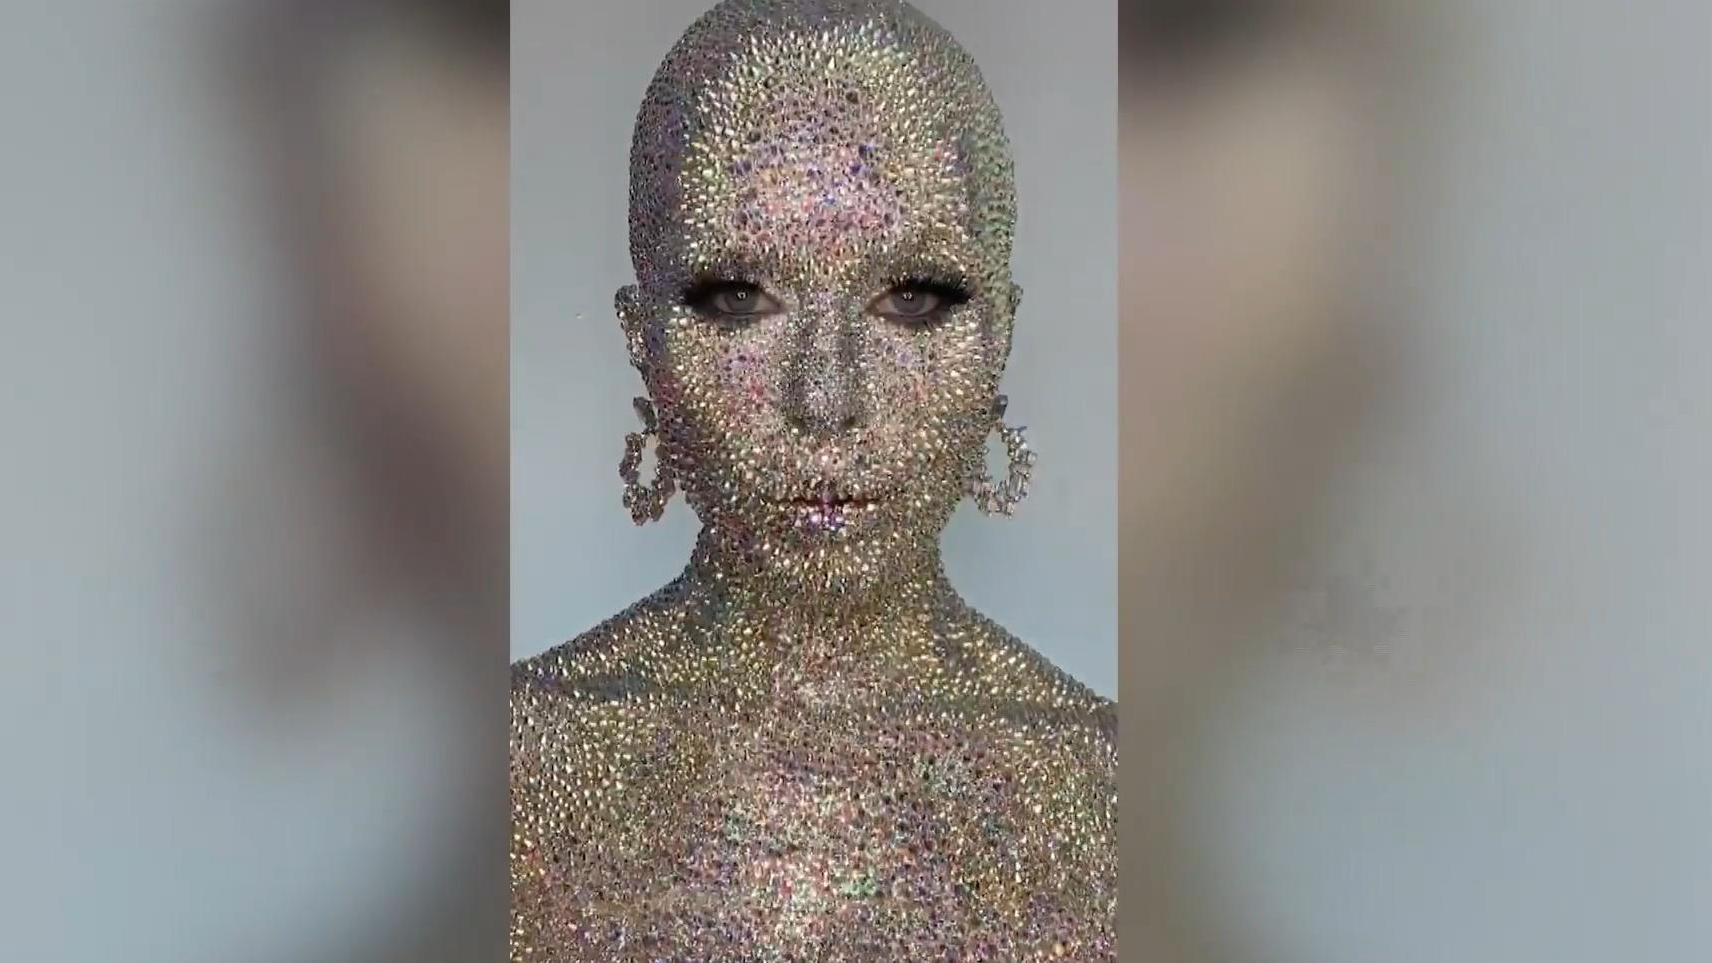 Frau klebt sich 13.000 Strasssteine auf den Körper 27 Stunden schminken!